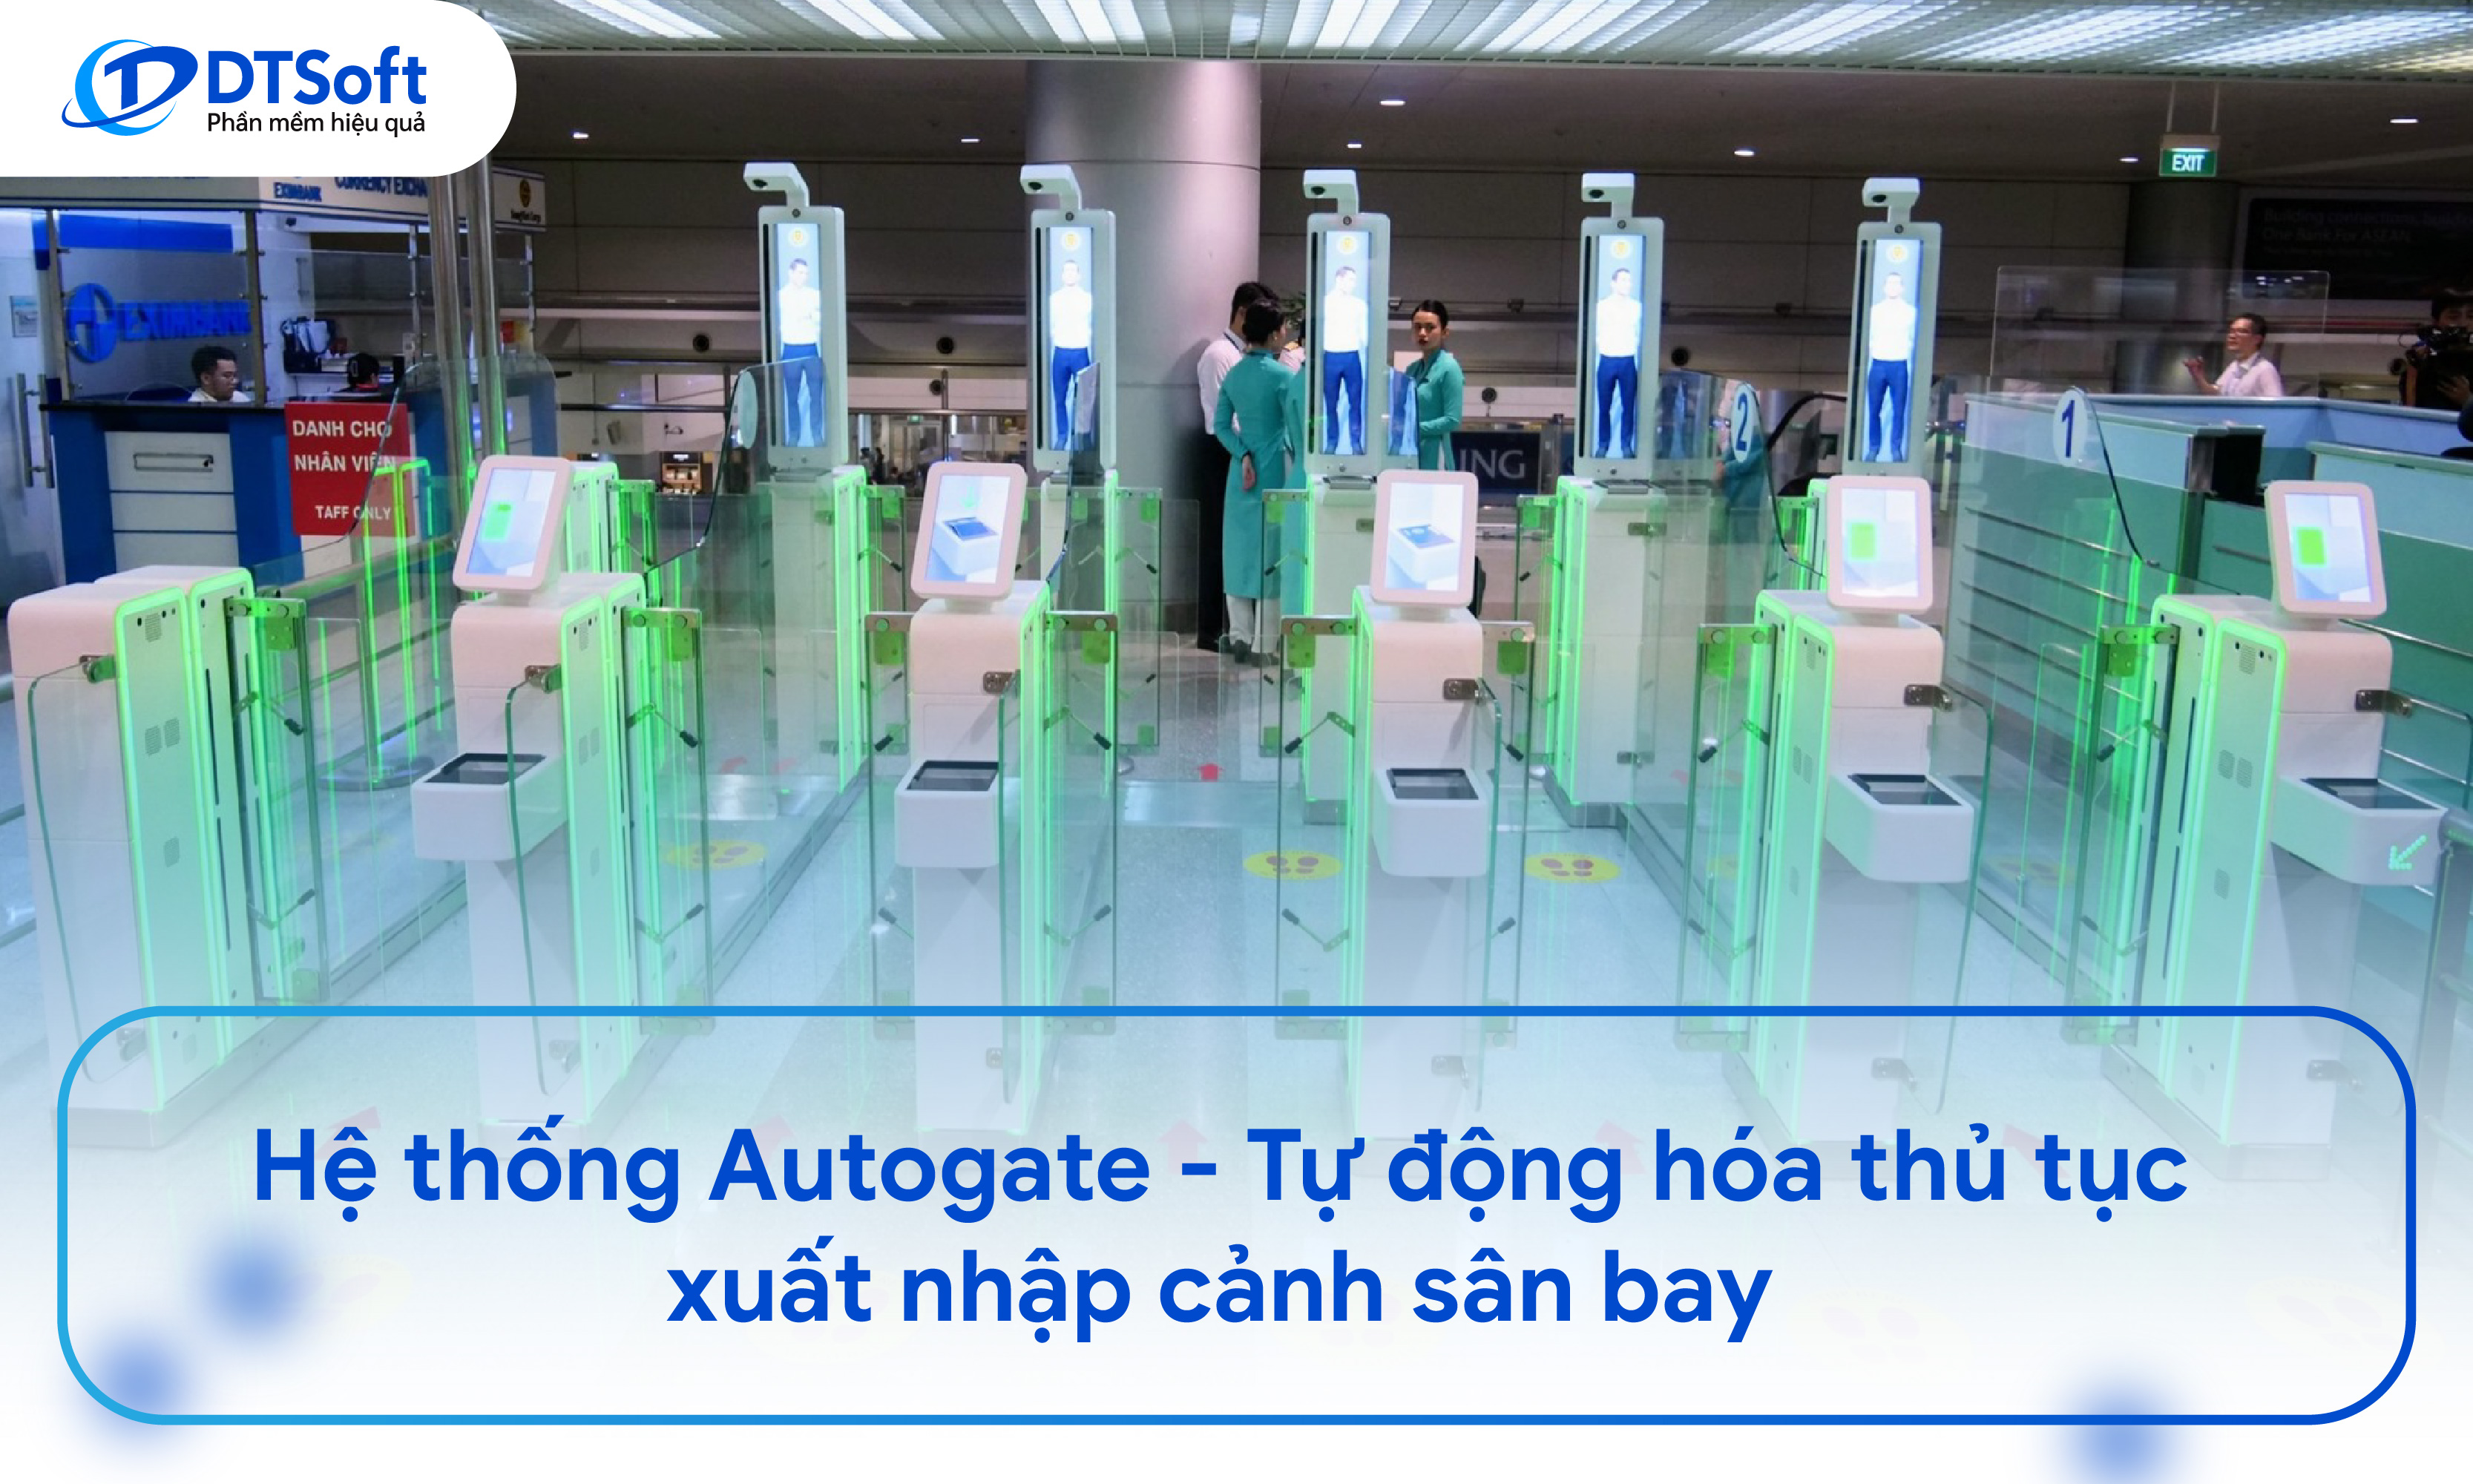 Hệ thống Autogate - Tự động hóa thủ tục xuất nhập cảnh sân bay trong vòng 